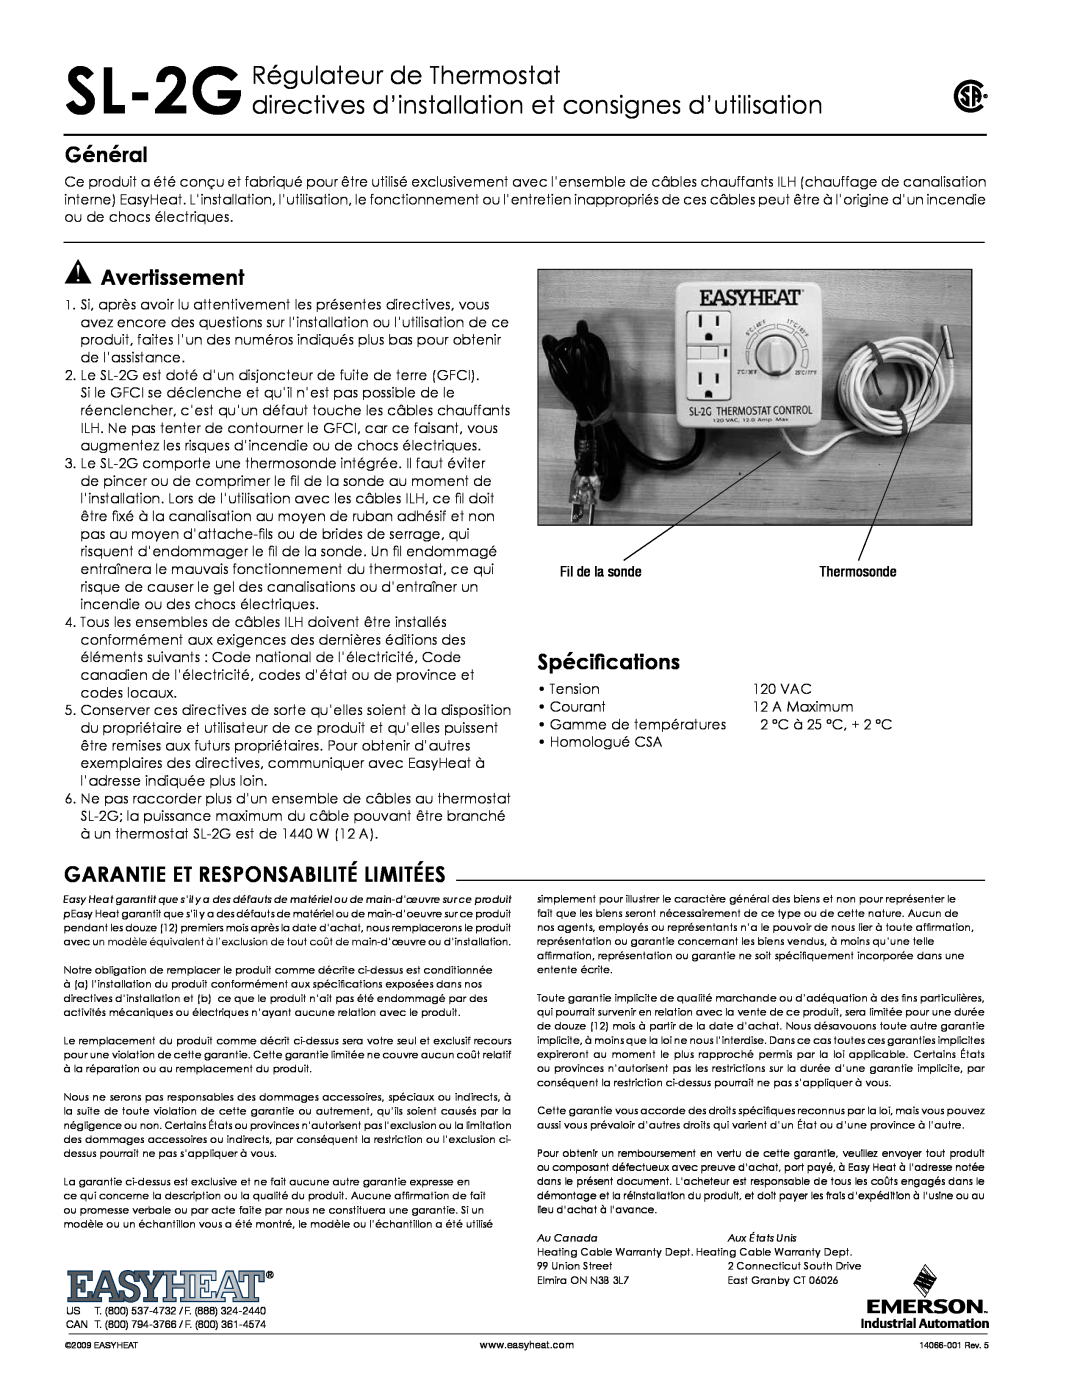 Emerson SL-2G Régulateur de Thermostat, directives d’installation et consignes d’utilisation, Général, Avertissement 